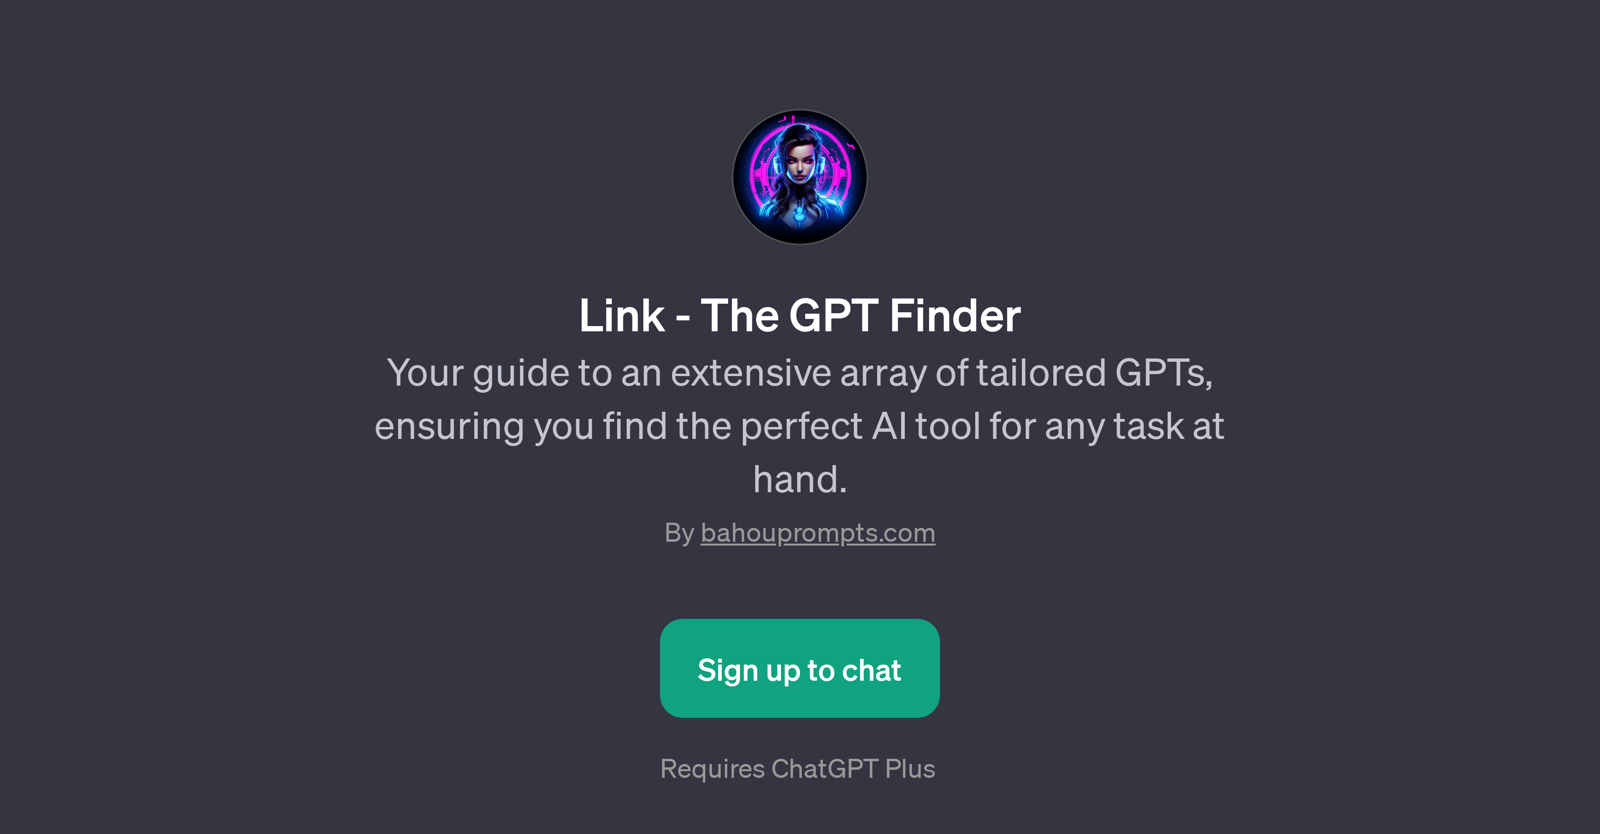 Link - The GPT Finder website